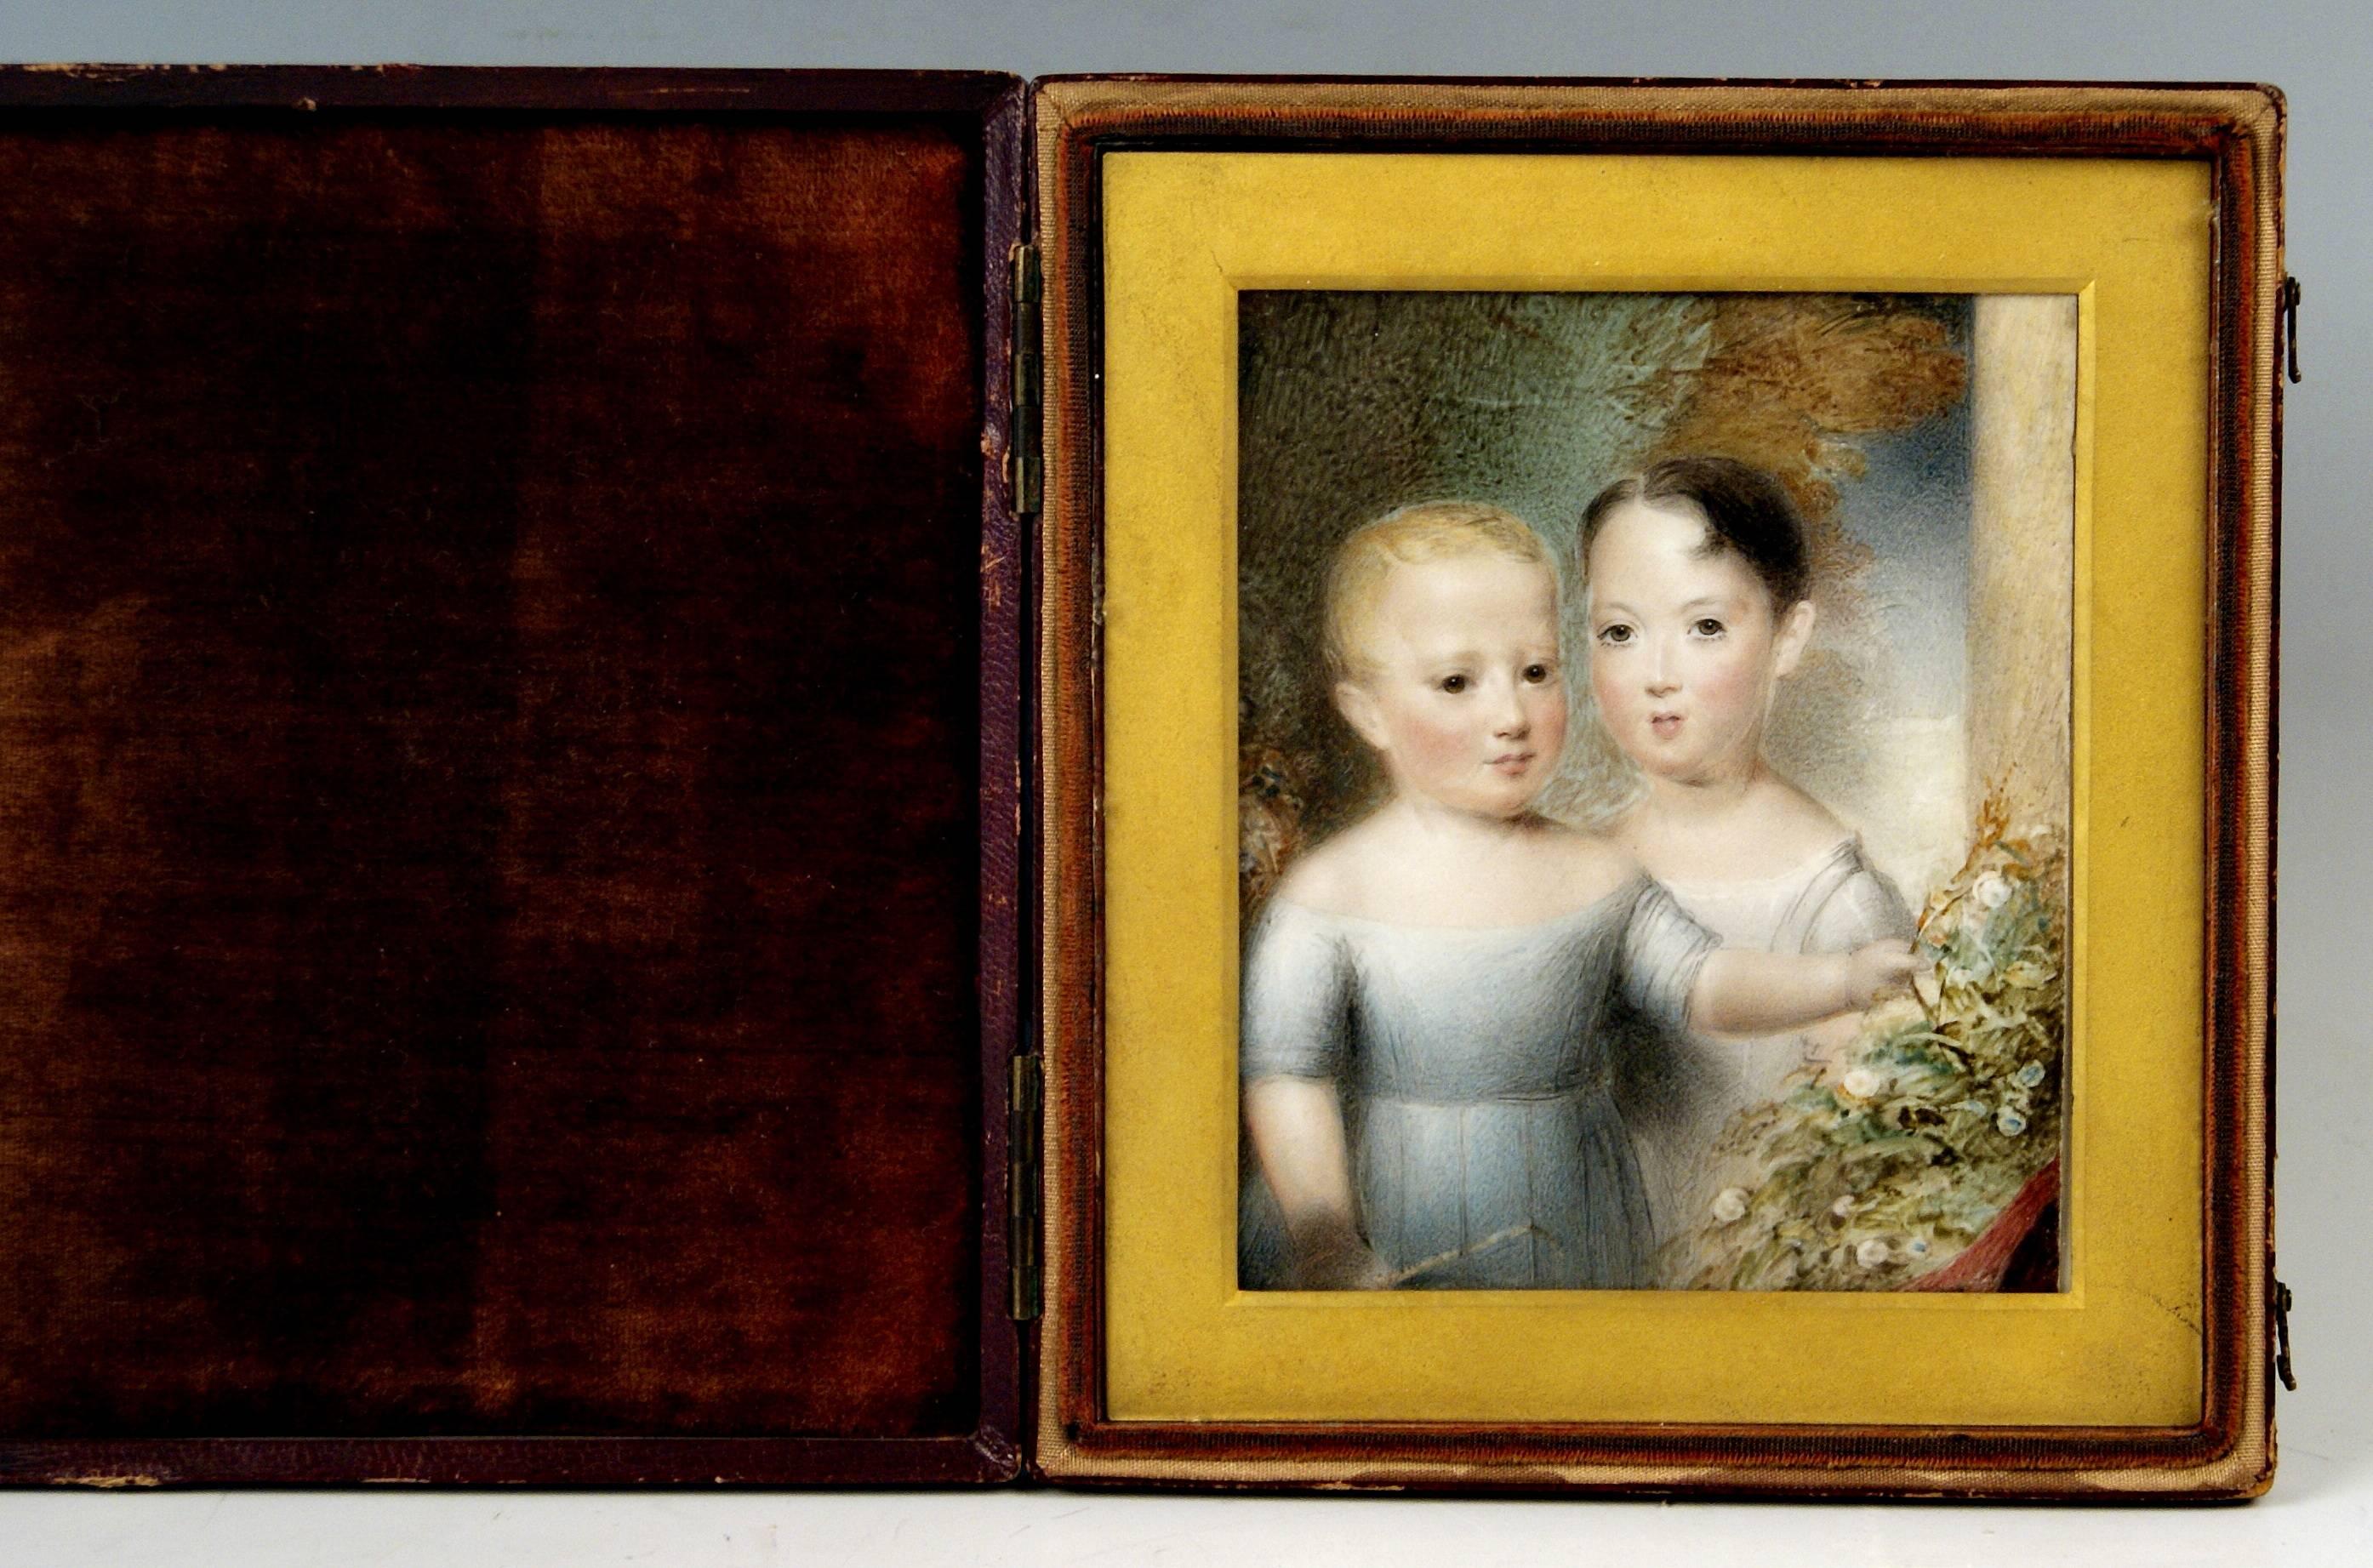 Hand-painted Portrait en miniature (thumbnail) of two lovely children,
Victorian Period.
UK, painted, circa 1860-1870.

Portrait peinte aimable à la main des deux enfants (garçon et fille),
Victorien Période / Ère.
Royaume-Uni, peinture en